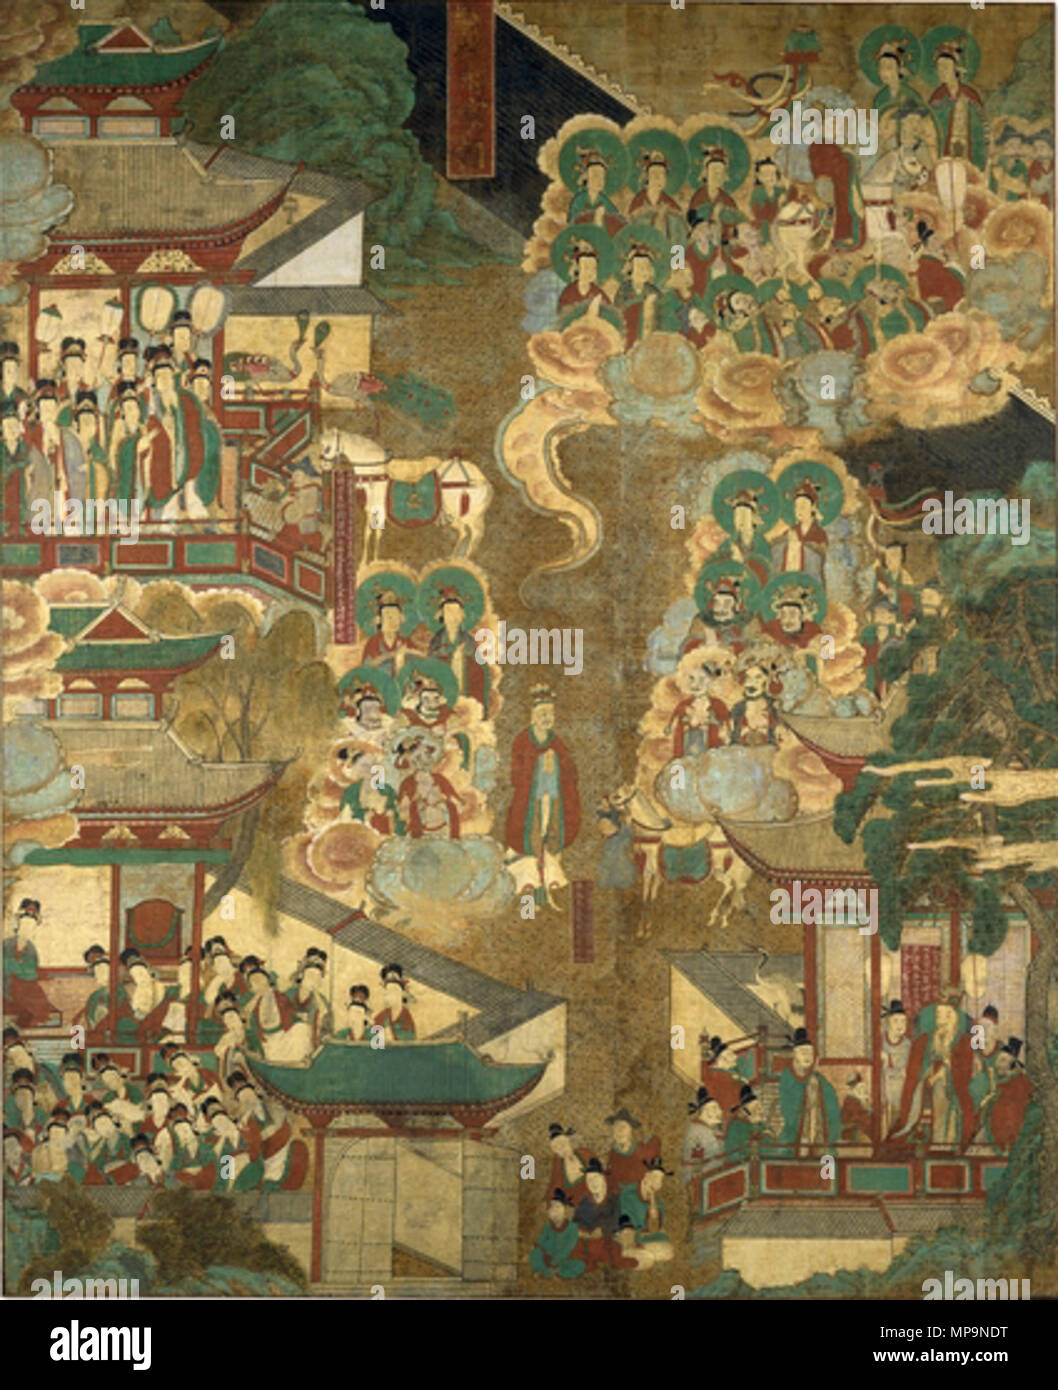 . Die großen Verzicht, ein Gemälde von Hanf Tuch 1 von 8 Bilder aus dem Leben des historischen Buddha. Choson Dynastie, Anfang des 18. Jahrhunderts. Anonym 774 Korea-Joseon - Die große Entsagung-18c Stockfoto